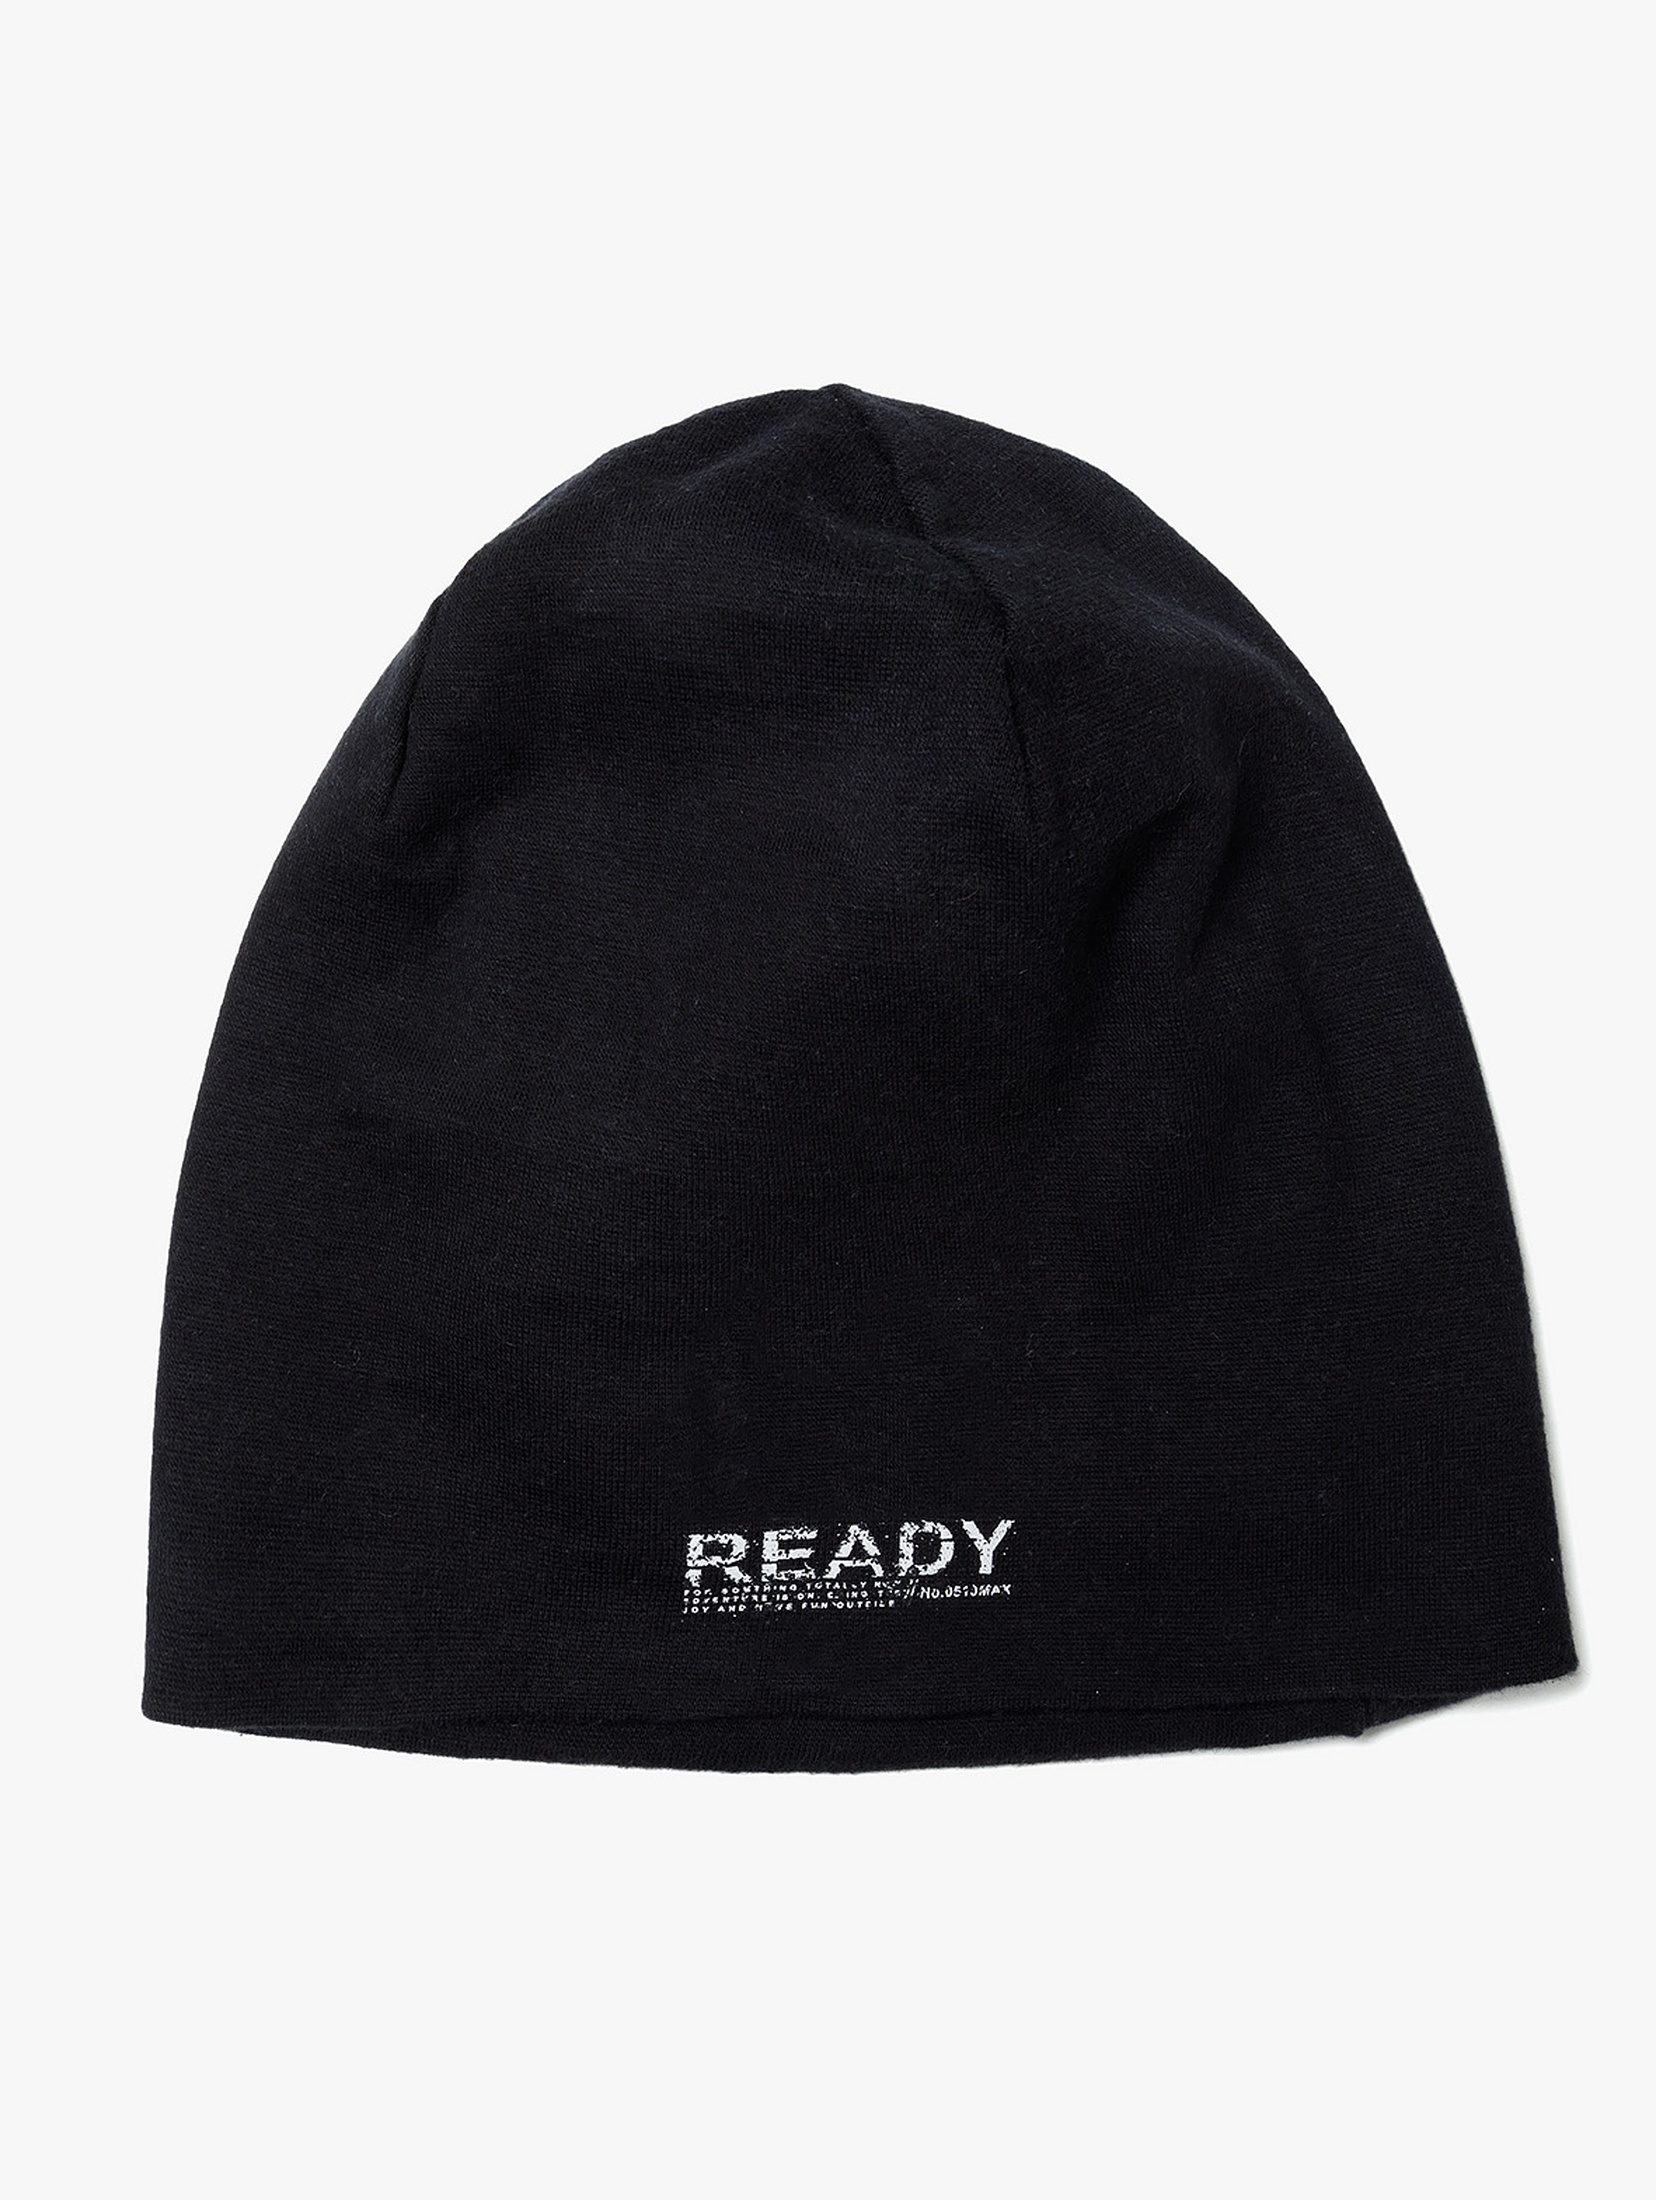 Czarna dzianinowa czapka dla chłopca - Ready